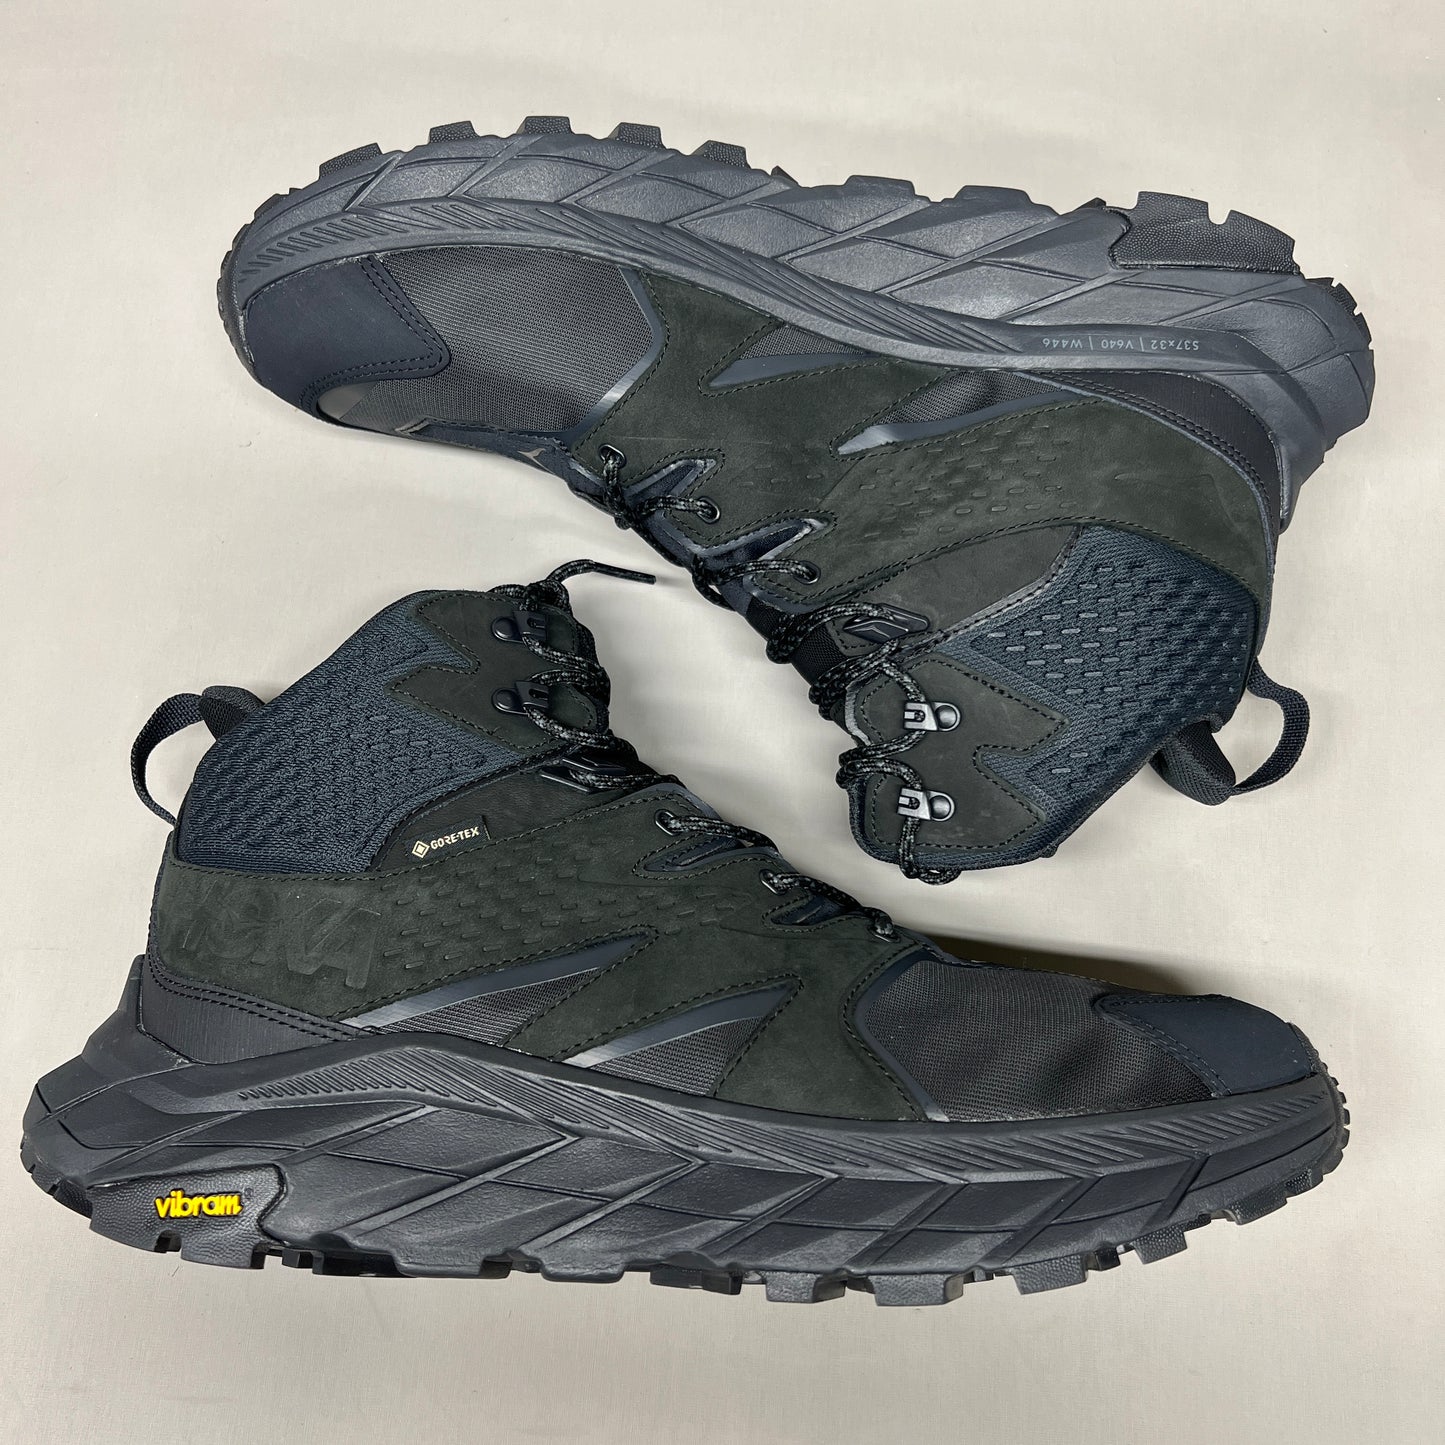 ZA@ HOKA Anacapa Mid GTX Hiking Boot Men's Size 11.5D 1122018 BBLC(New)